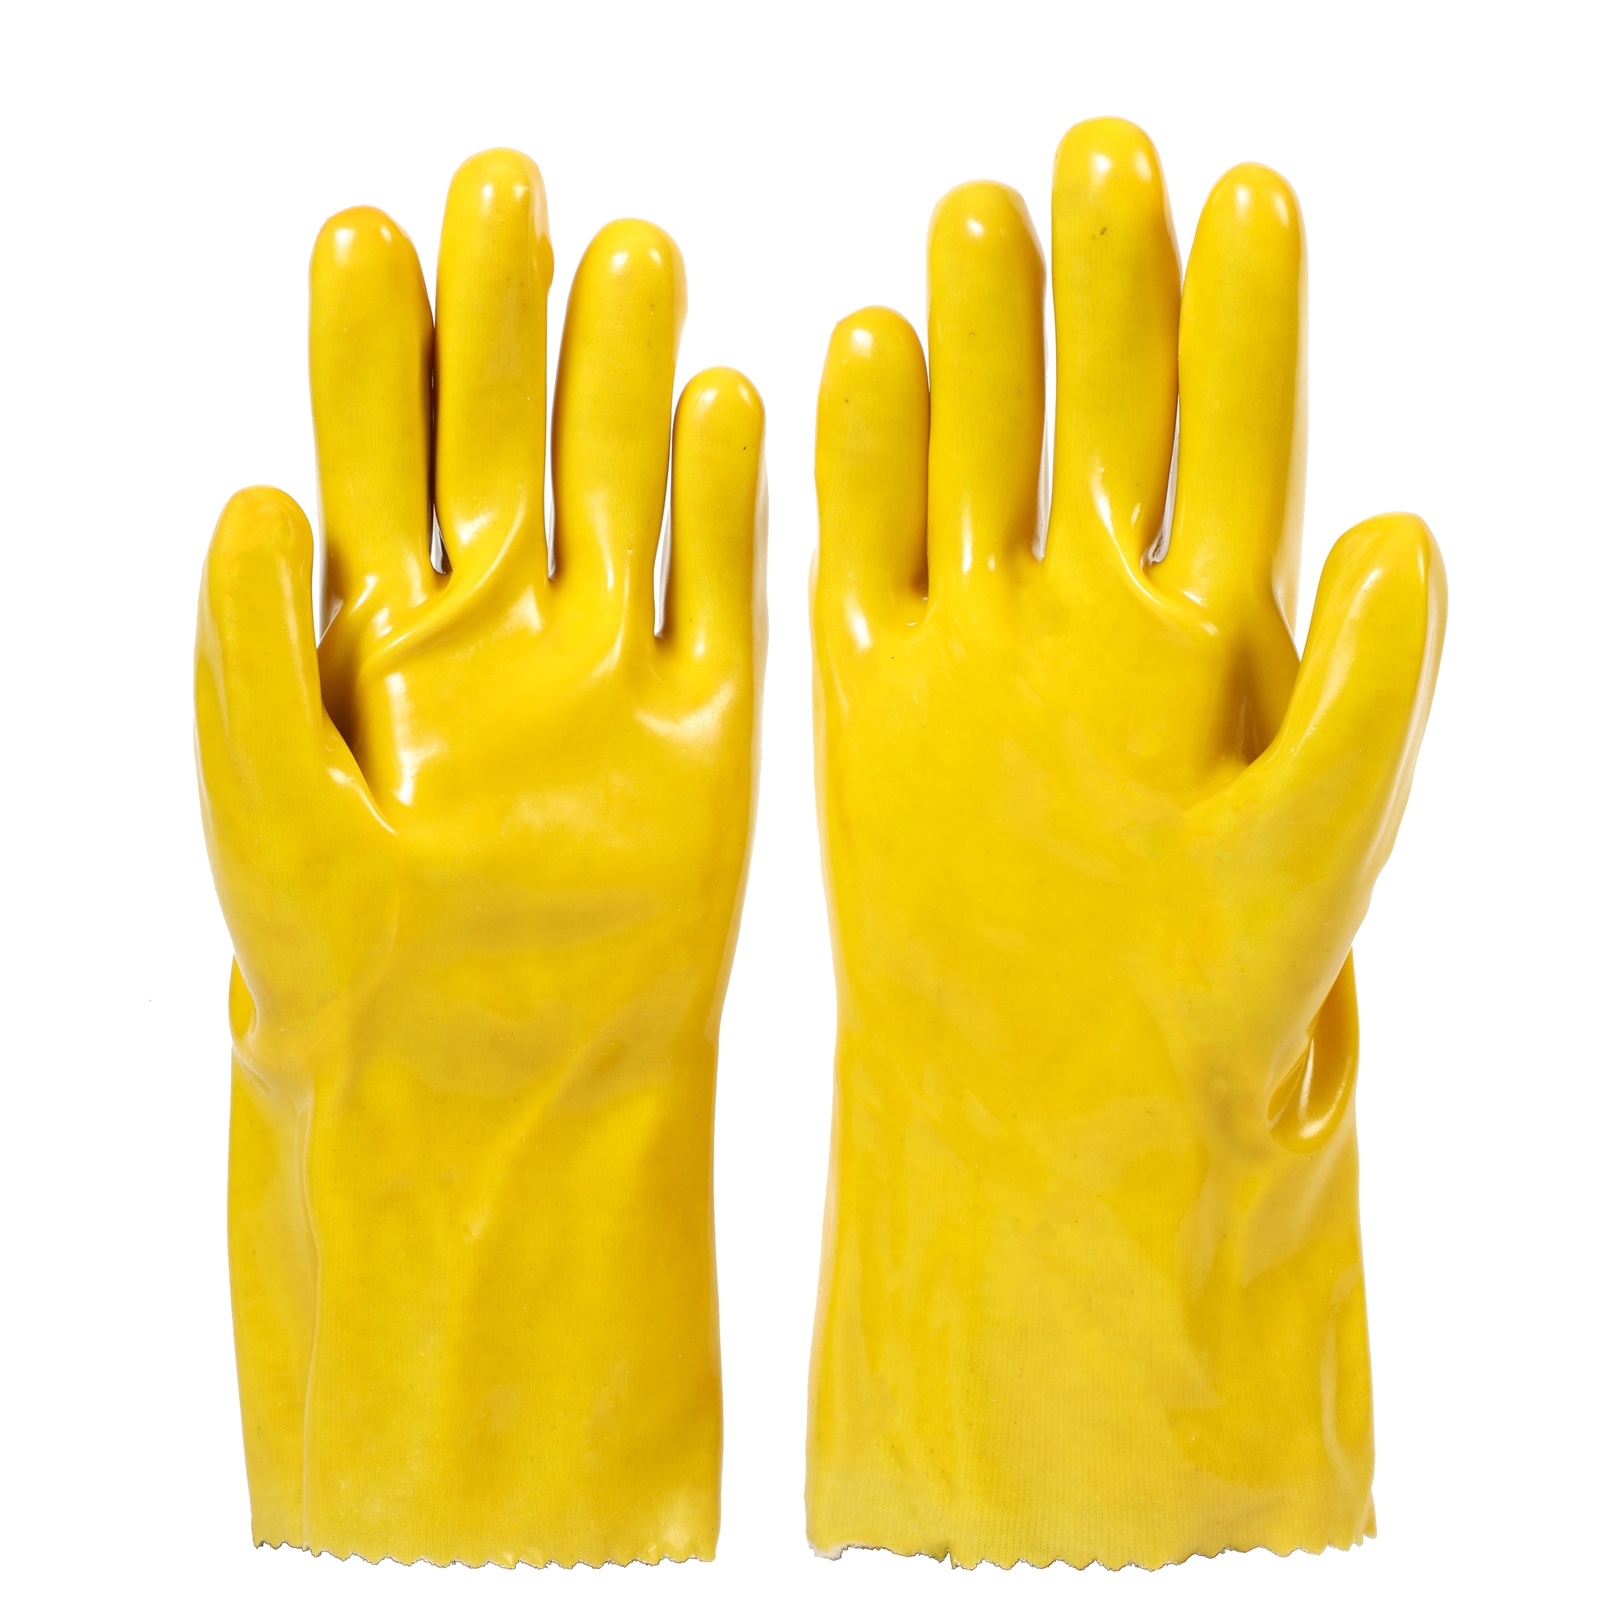 PVC потопени ръкавици, устойчиви на киселини и масла, антитоксични и замърсяващи, подходящи за контакт с пестициди, химически торове, токсични вещества Показано изображение